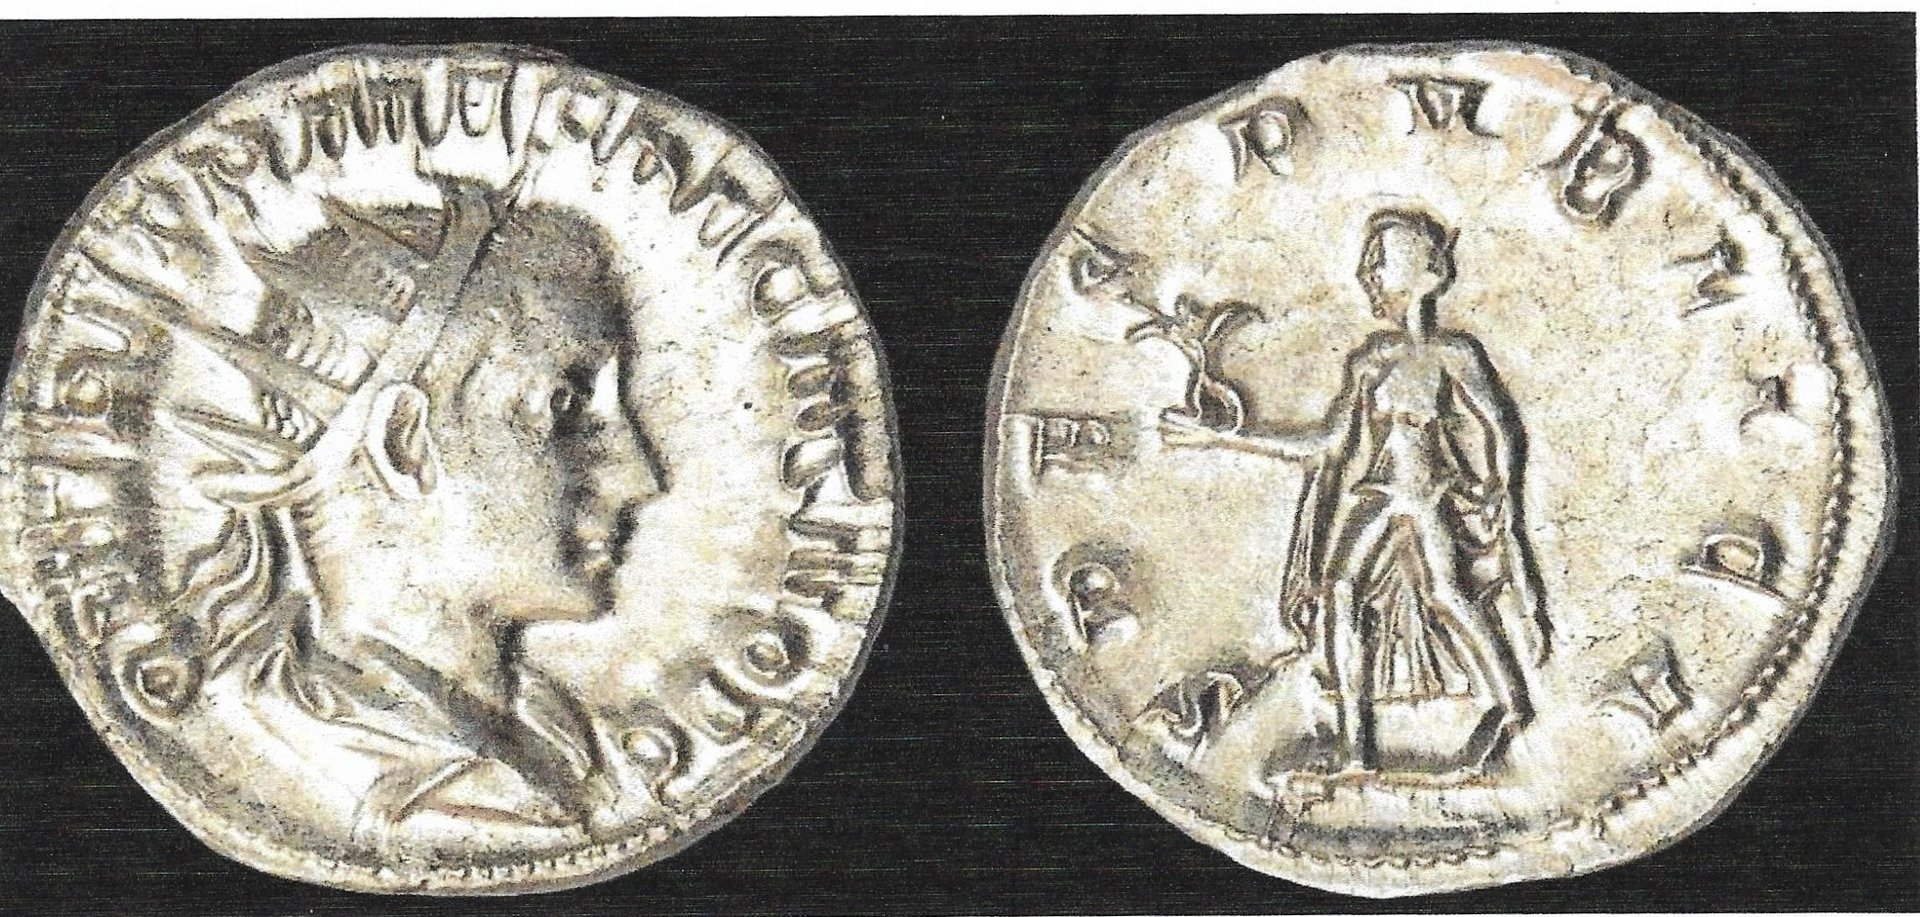 Herennius Etruscus - Spes.jpg